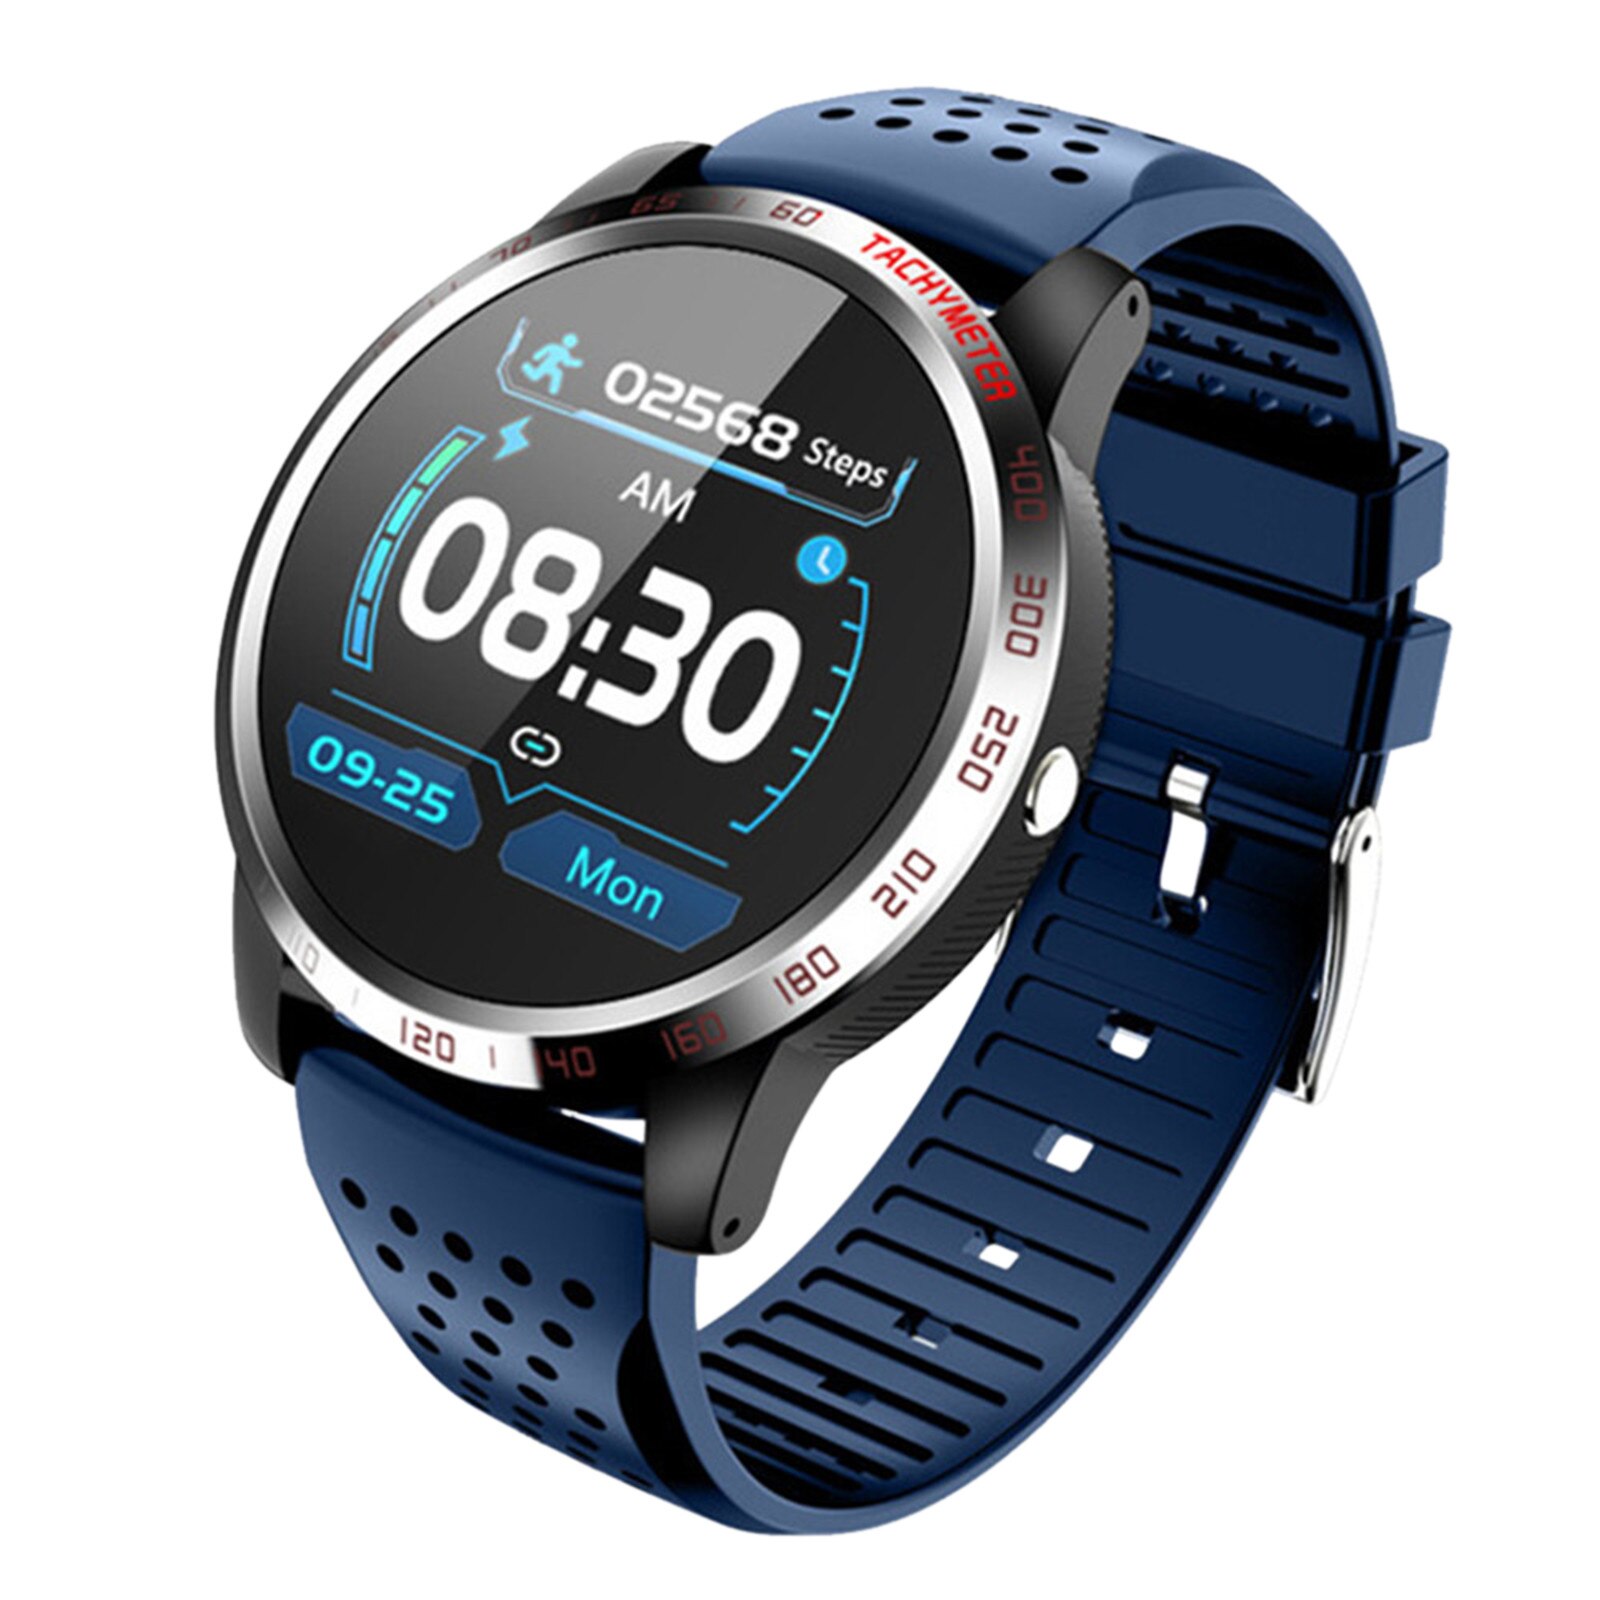 W3 Clever Uhr Gesunde Herz Bewertung Blutdruck Elektrokardiogramm Blut Sauerstoff Herz Bewertung Sport Fitness Reloj SmartWatch: Marine Blau